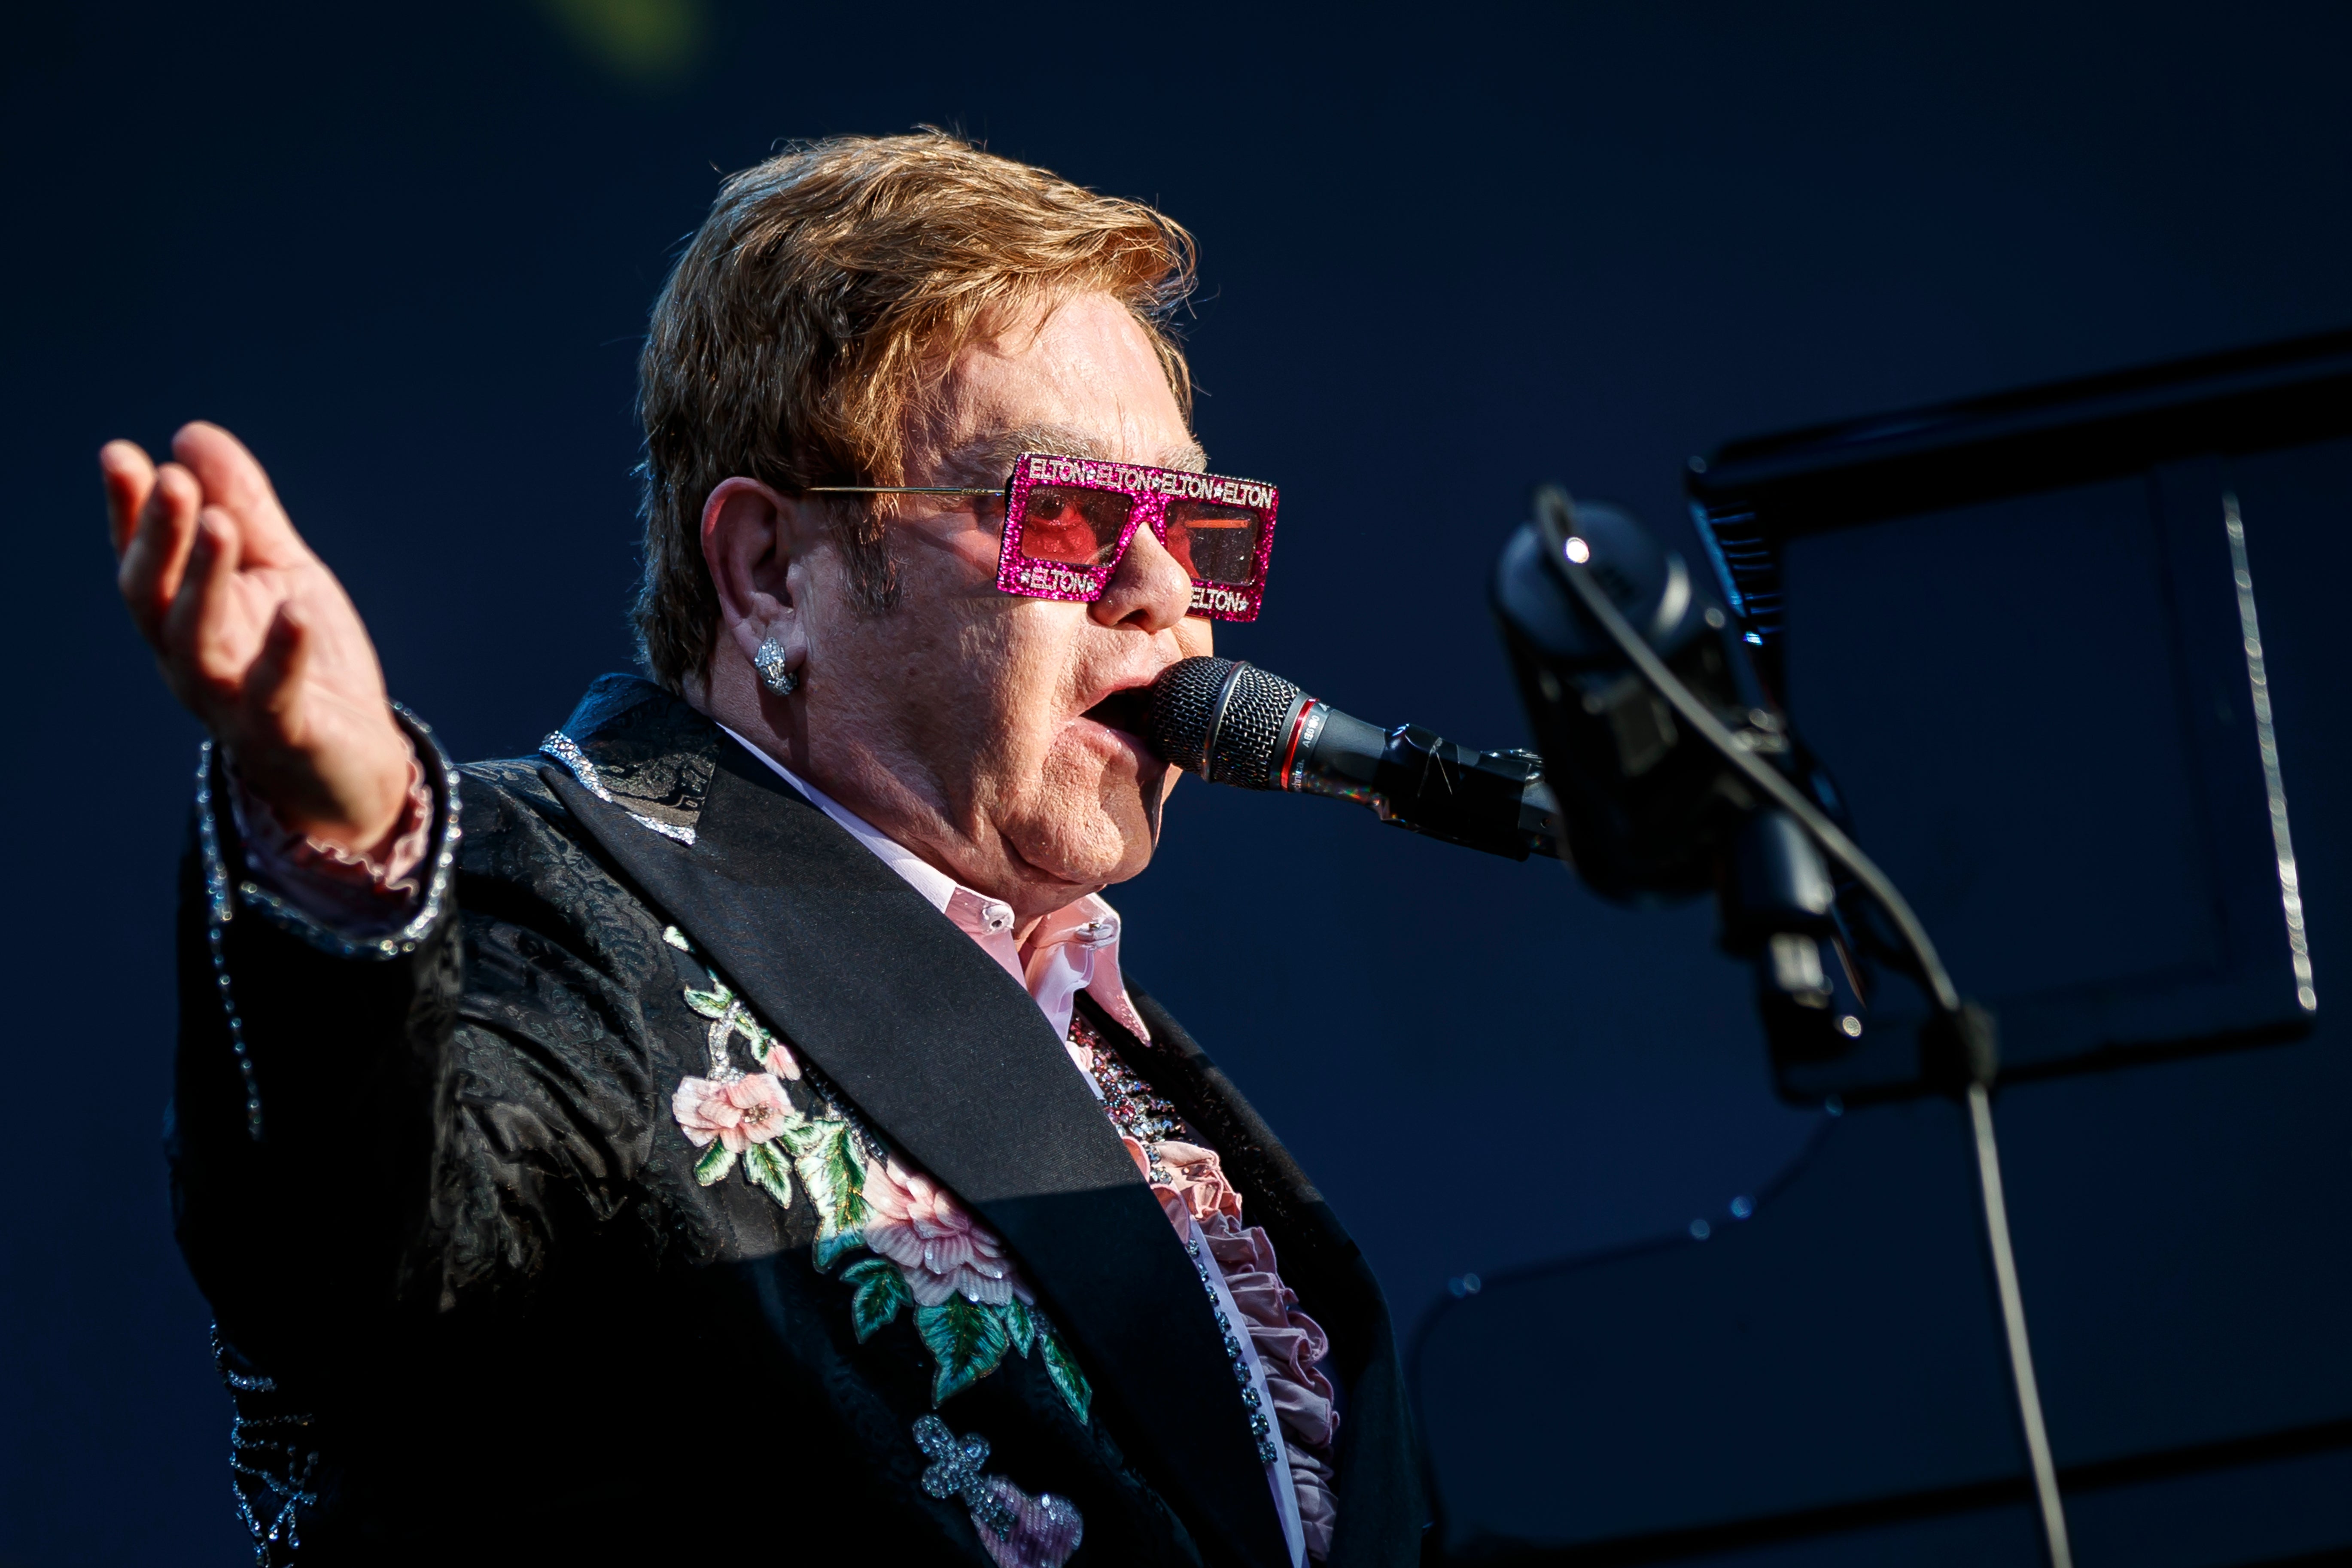 ARCHIVO - El músico británico Elton John durante un concierto de su gira "Farewell Yellow Brick Road" en el Festival de Jazz de Montreux, en Montreux, Suiza, el 29 de junio de 2019.&nbsp;